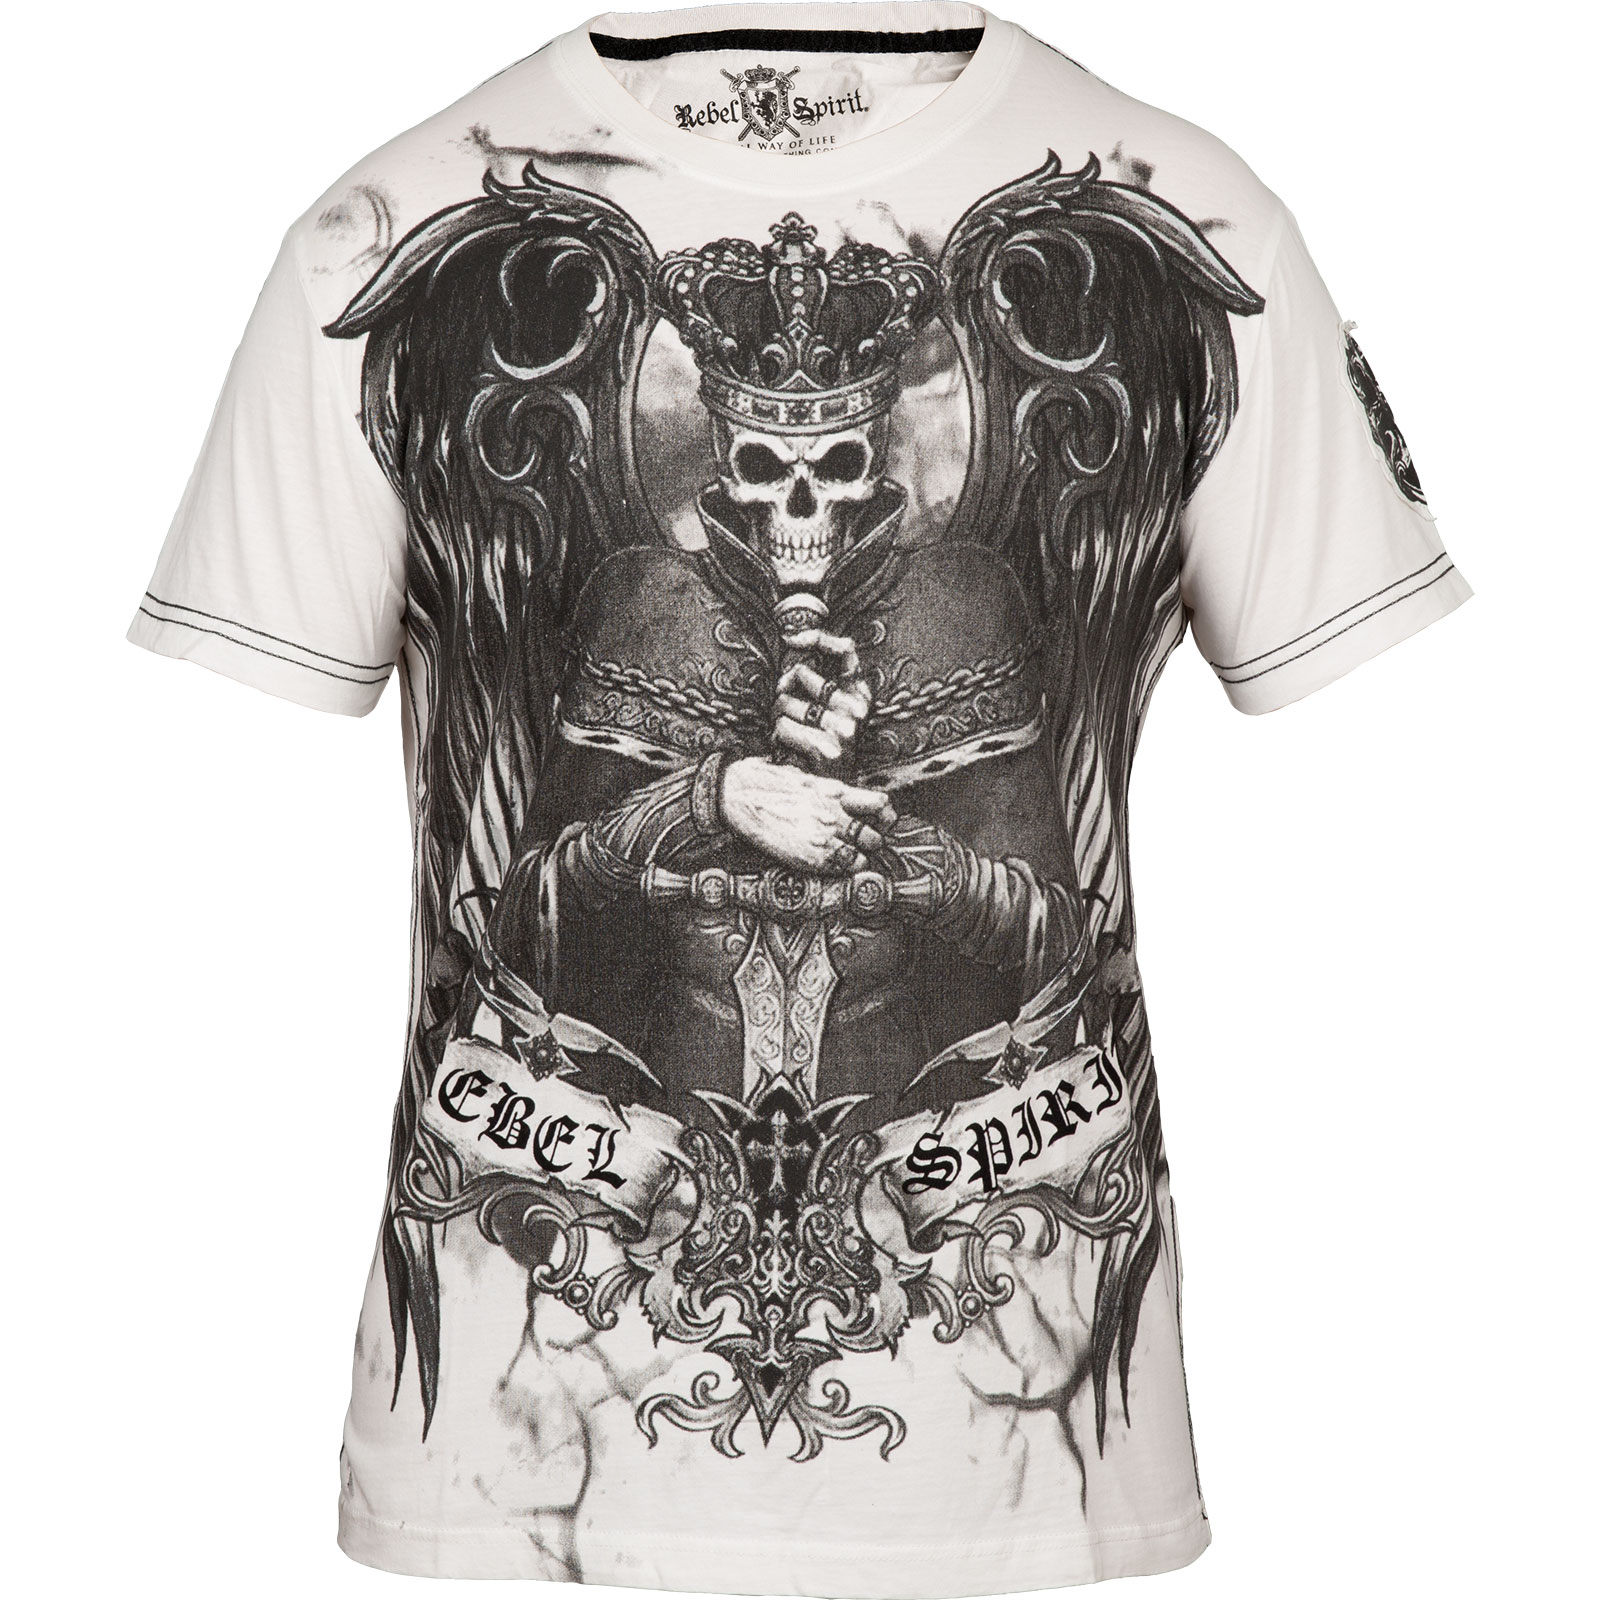 Rebel Spirit - Rebel Spirit T-Shirt SSK 121431 with large Print Designs ...